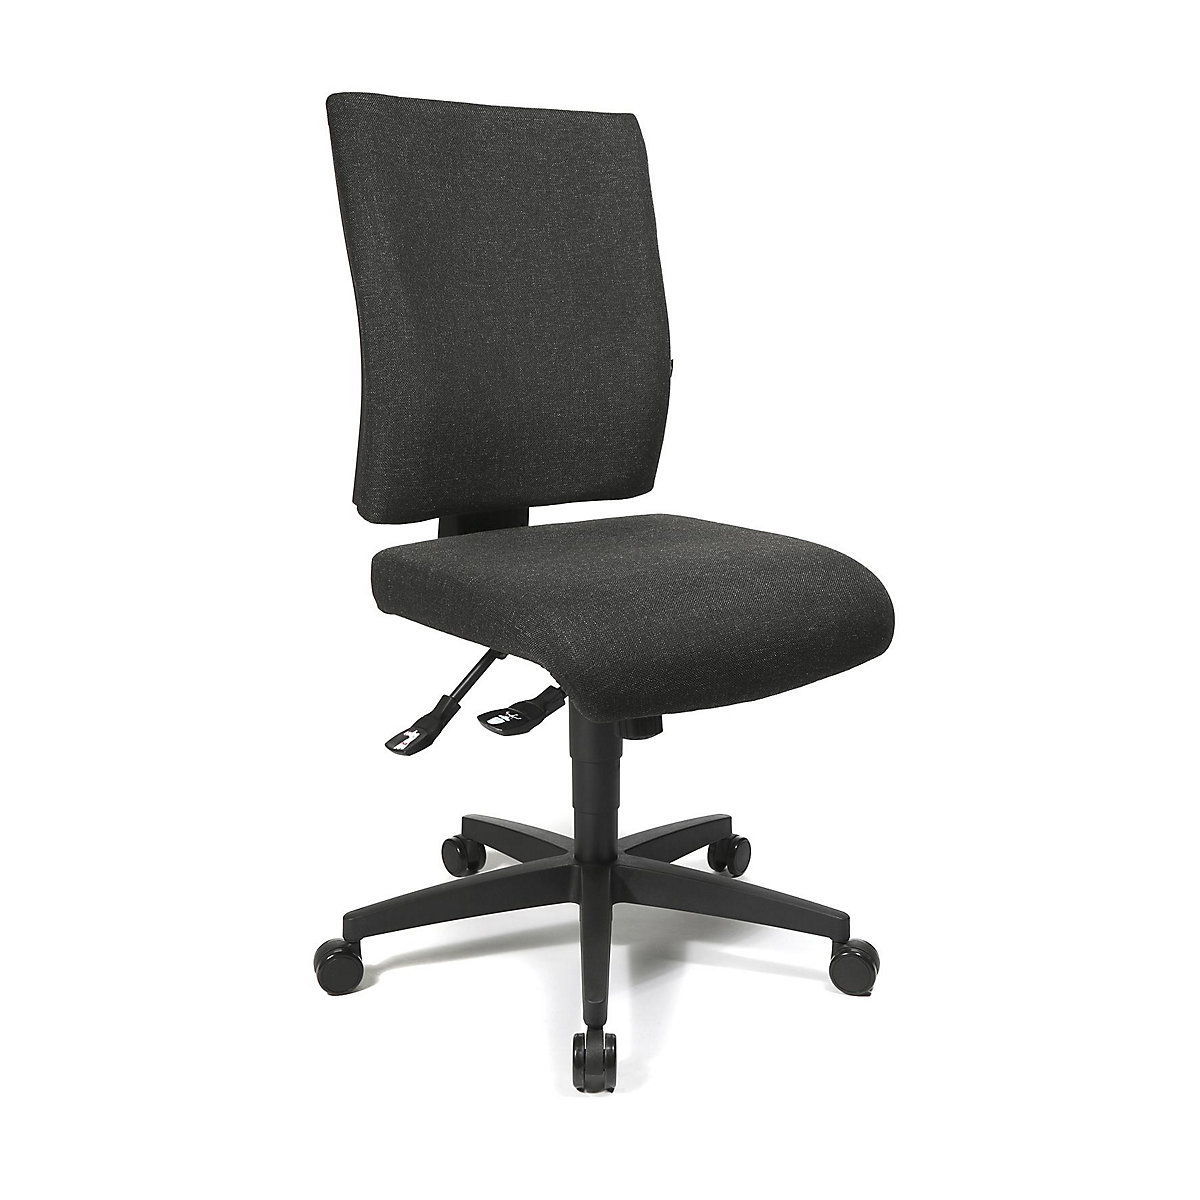 Cadeira giratória de escritório COMFORT – Topstar, encosto regulável em altura, forro antracite-22